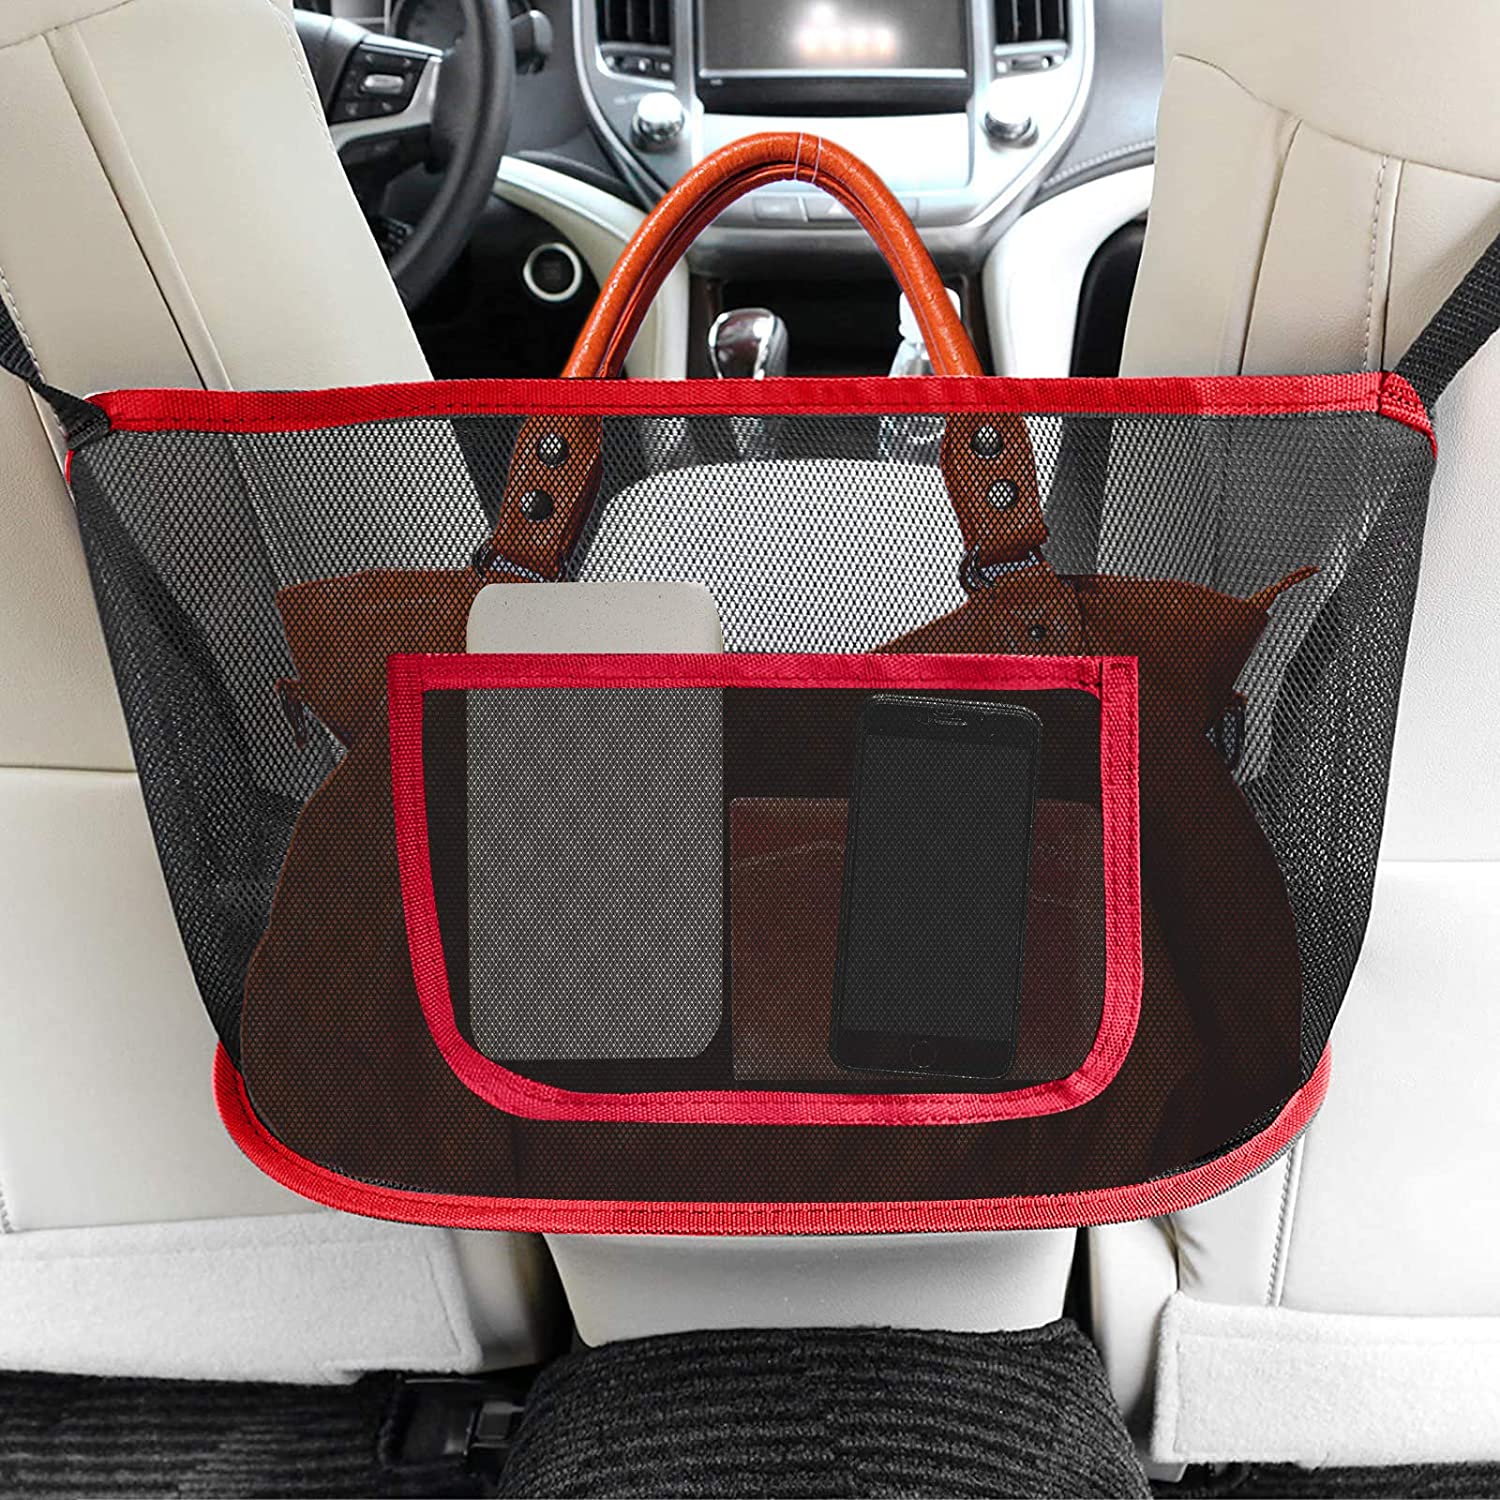 Car Net Pocket Handbag Holder,Car Purse Holder Between Seats Car